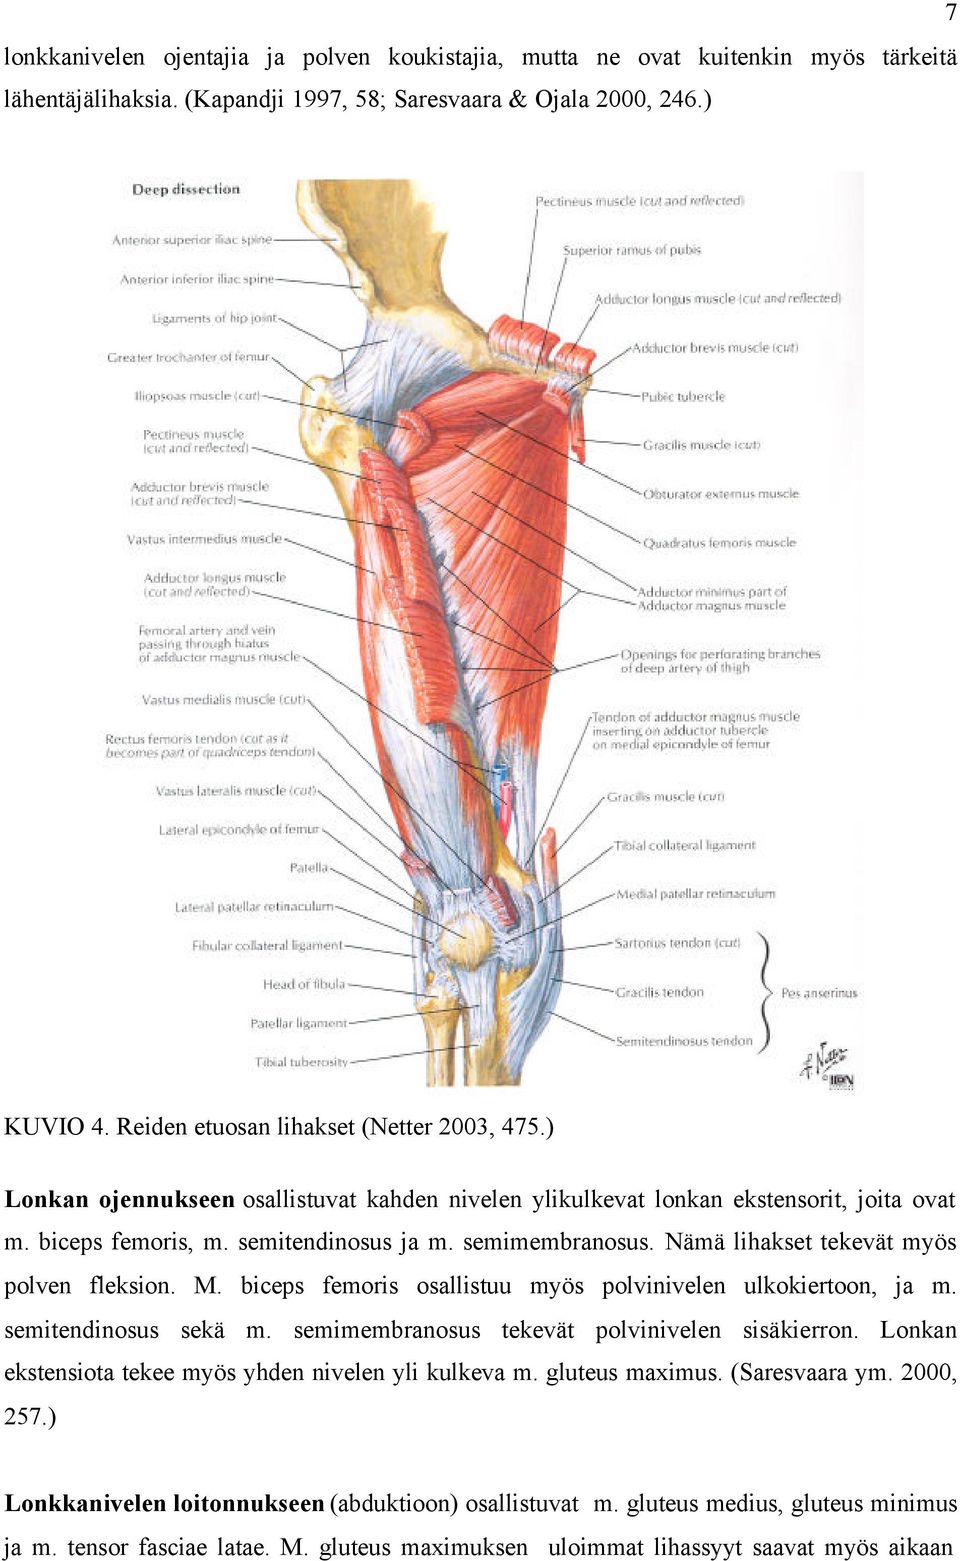 Nämä lihakset tekevät myös polven fleksion. M. biceps femoris osallistuu myös polvinivelen ulkokiertoon, ja m. semitendinosus sekä m. semimembranosus tekevät polvinivelen sisäkierron.